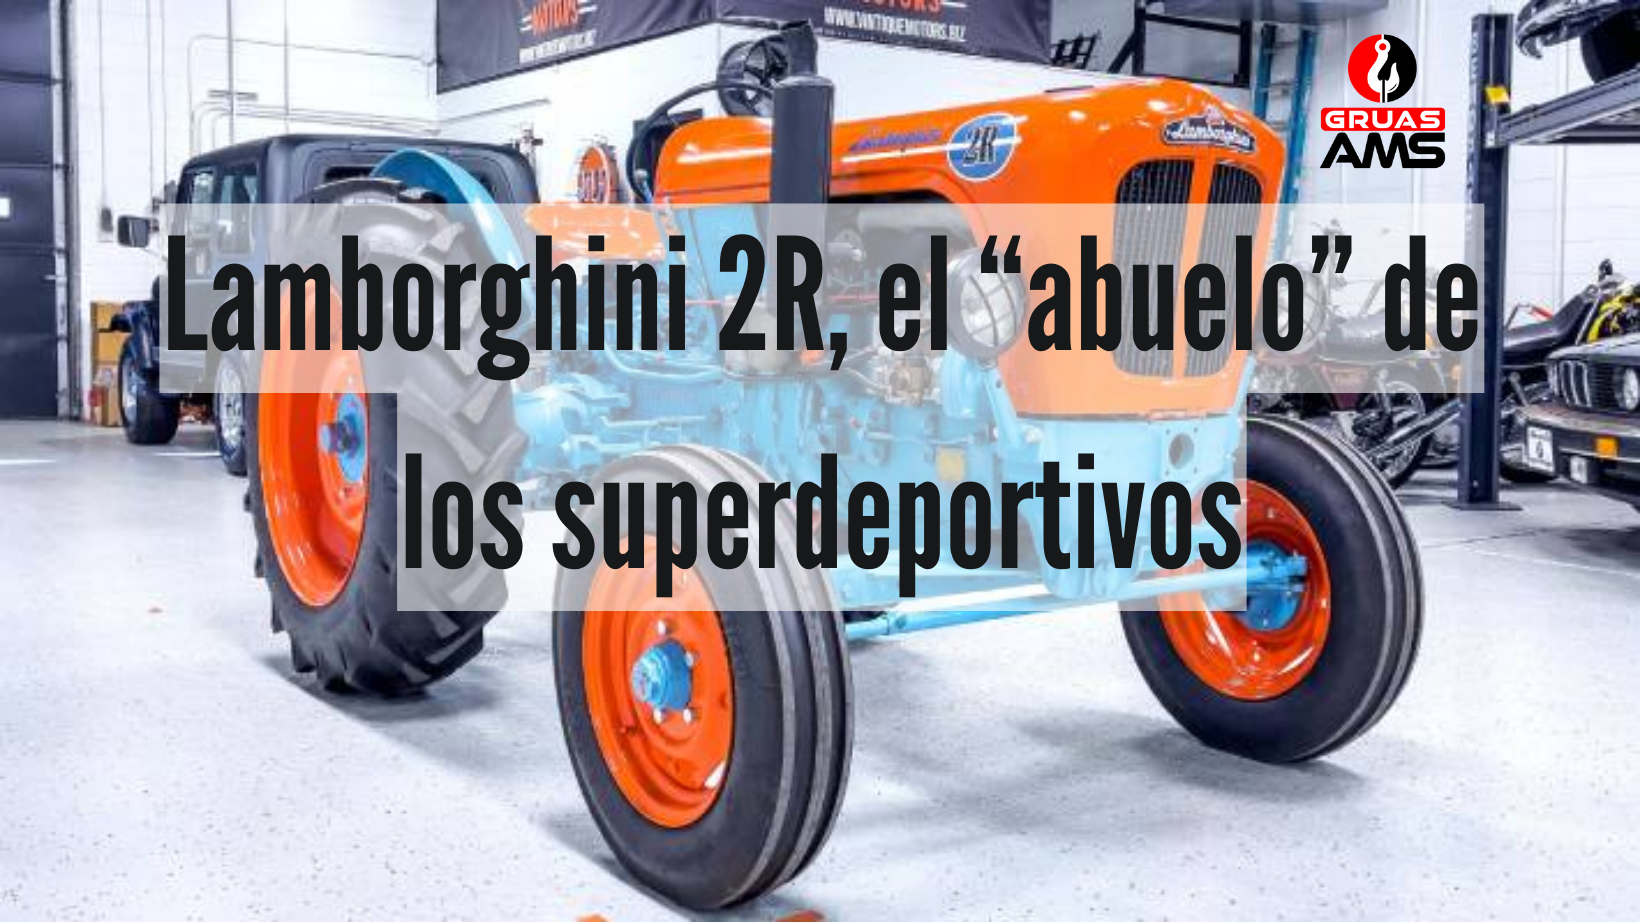 Lamborghini 2R, el “abuelo” de los superdeportivos